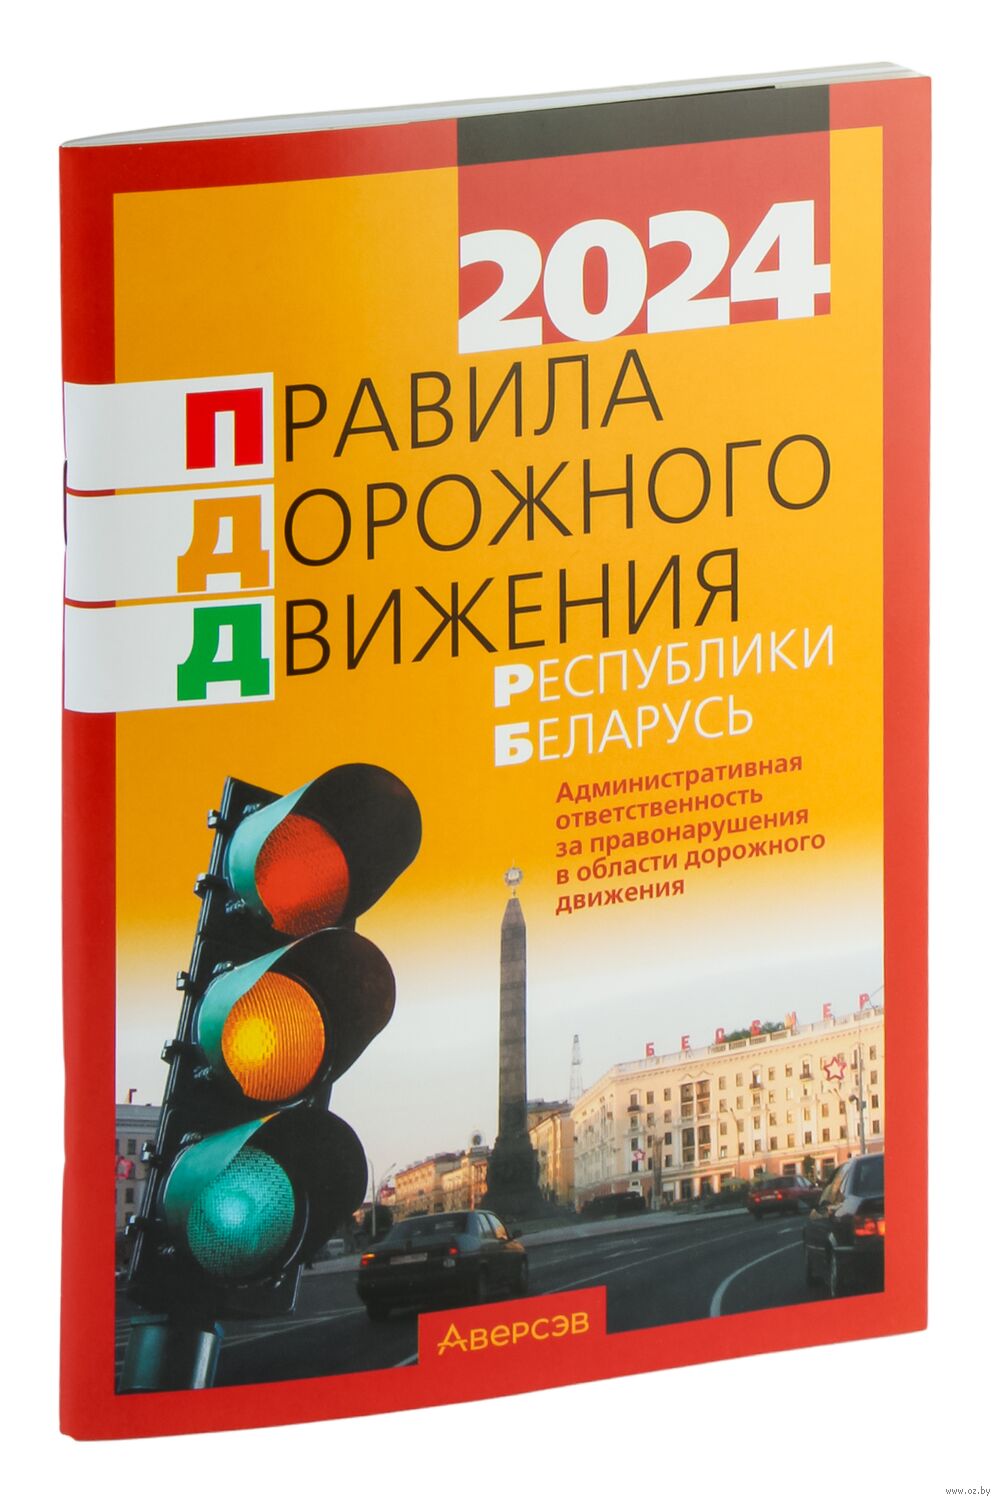 География беларуси 10 класс 2017 учебник скачать